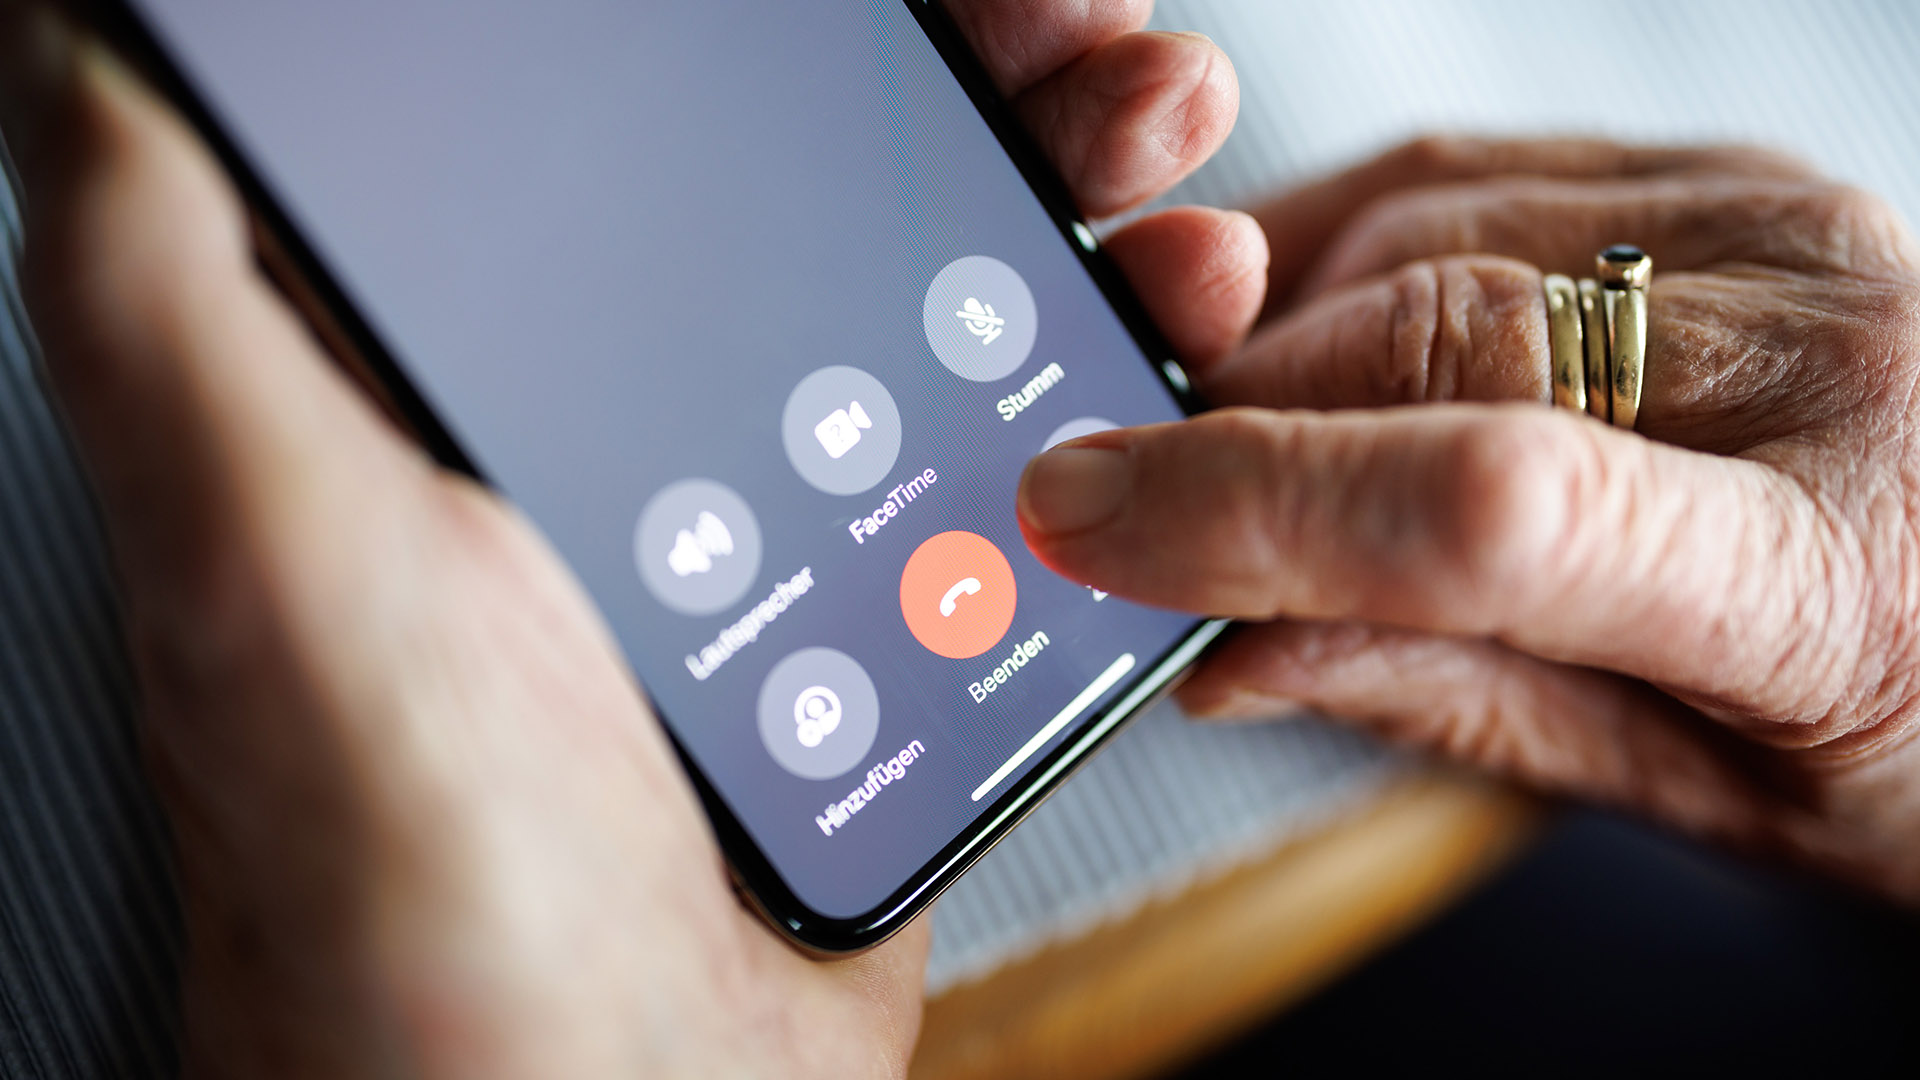 Symbolbild: Eine über 90-jährige Dame drückt auf ihrem Smartphone während eines Telefongesprächs auf die rote Schaltfläche zum Beenden des Anrufs. (Quelle: dpa/Balk)